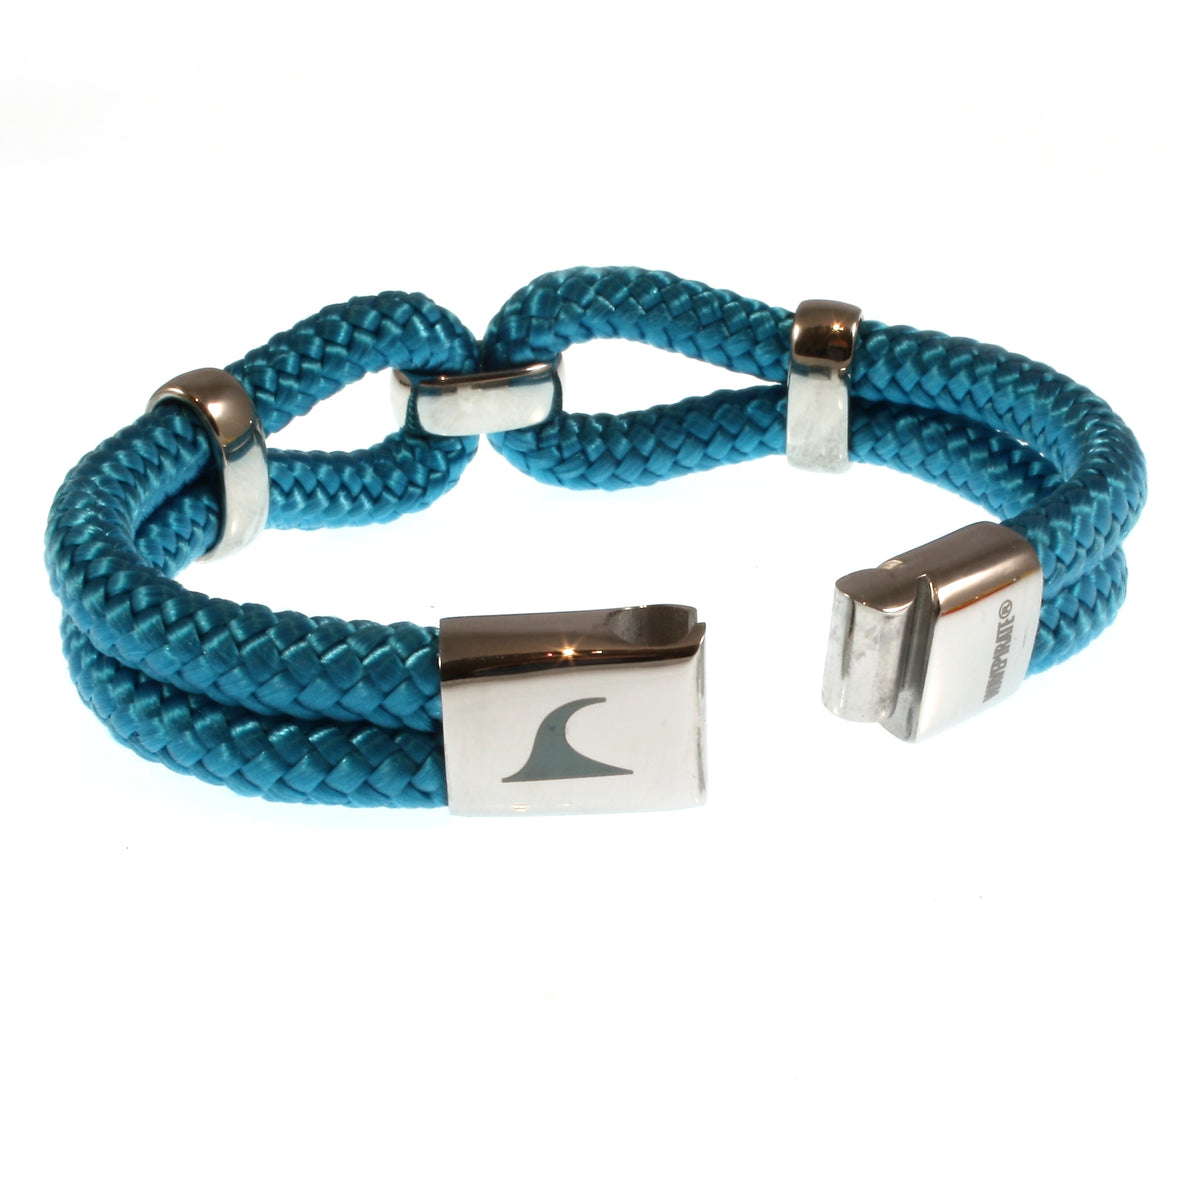 Damen-Segeltau-armband-roma-blau-geflochten-Edelstahlverschluss-offen-wavepirate-shop-st